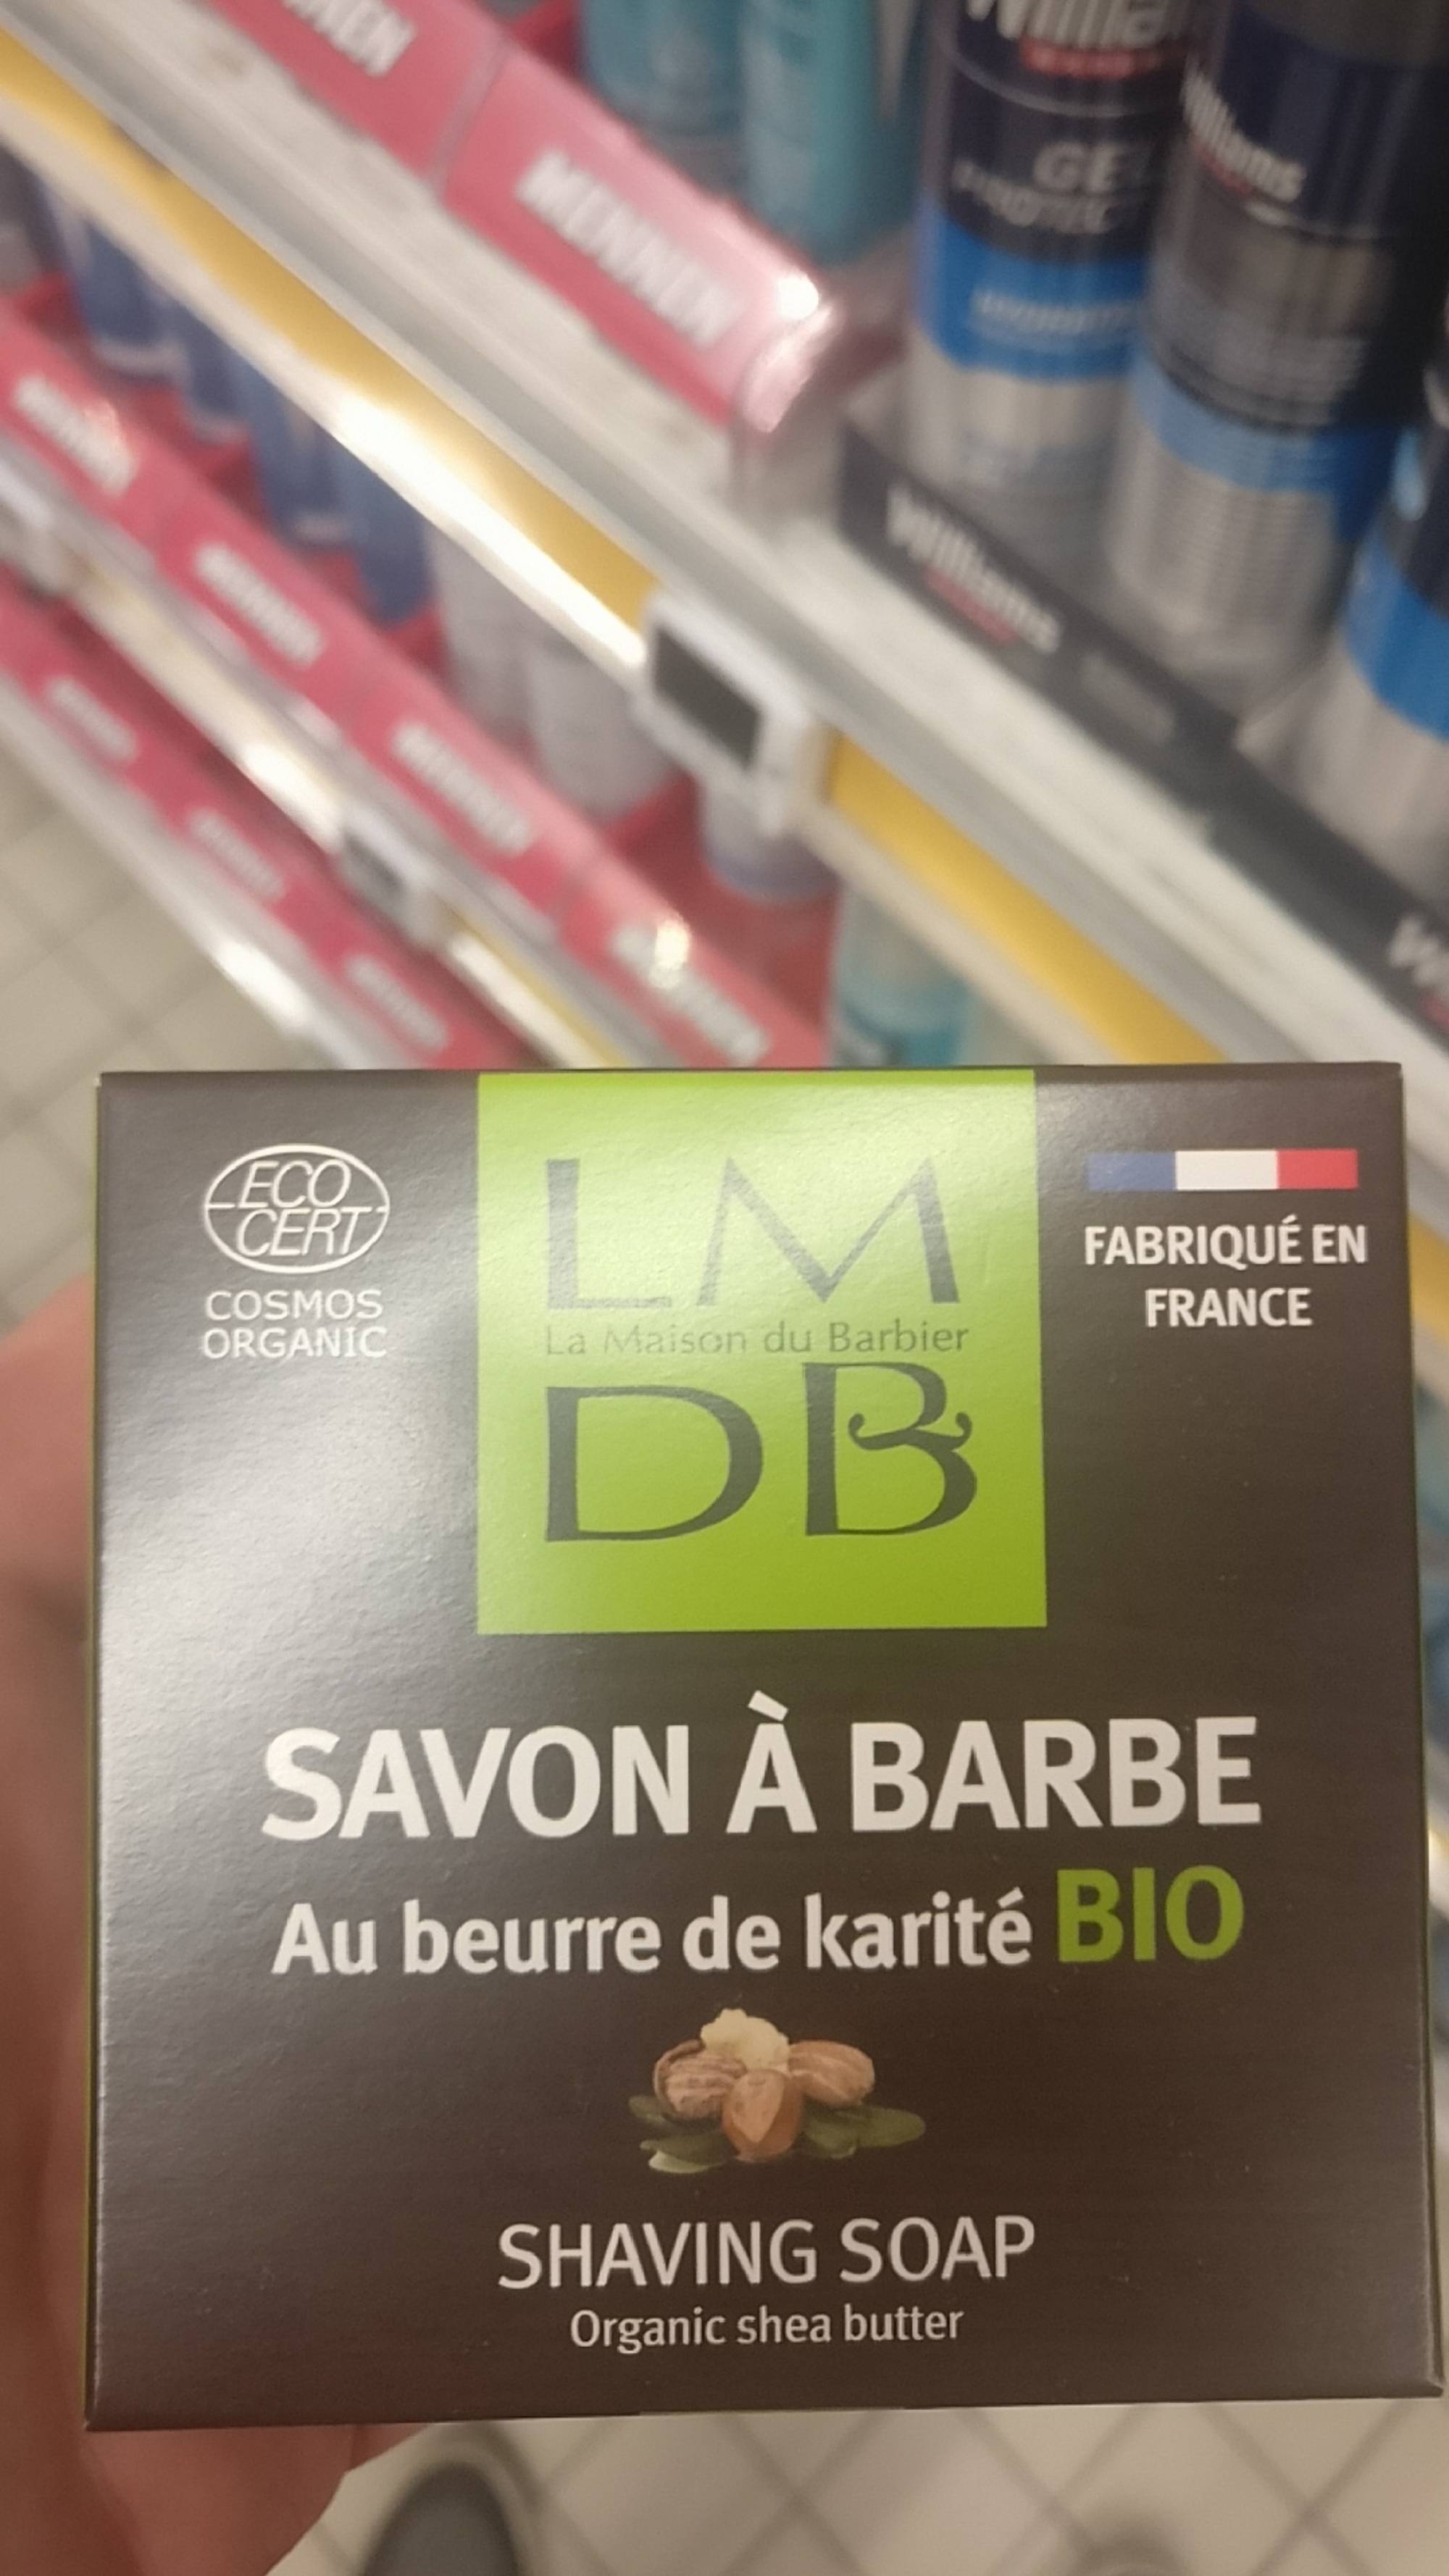 LA MAISON DU BARBIER - Savon à barbe au beurre de karité bio